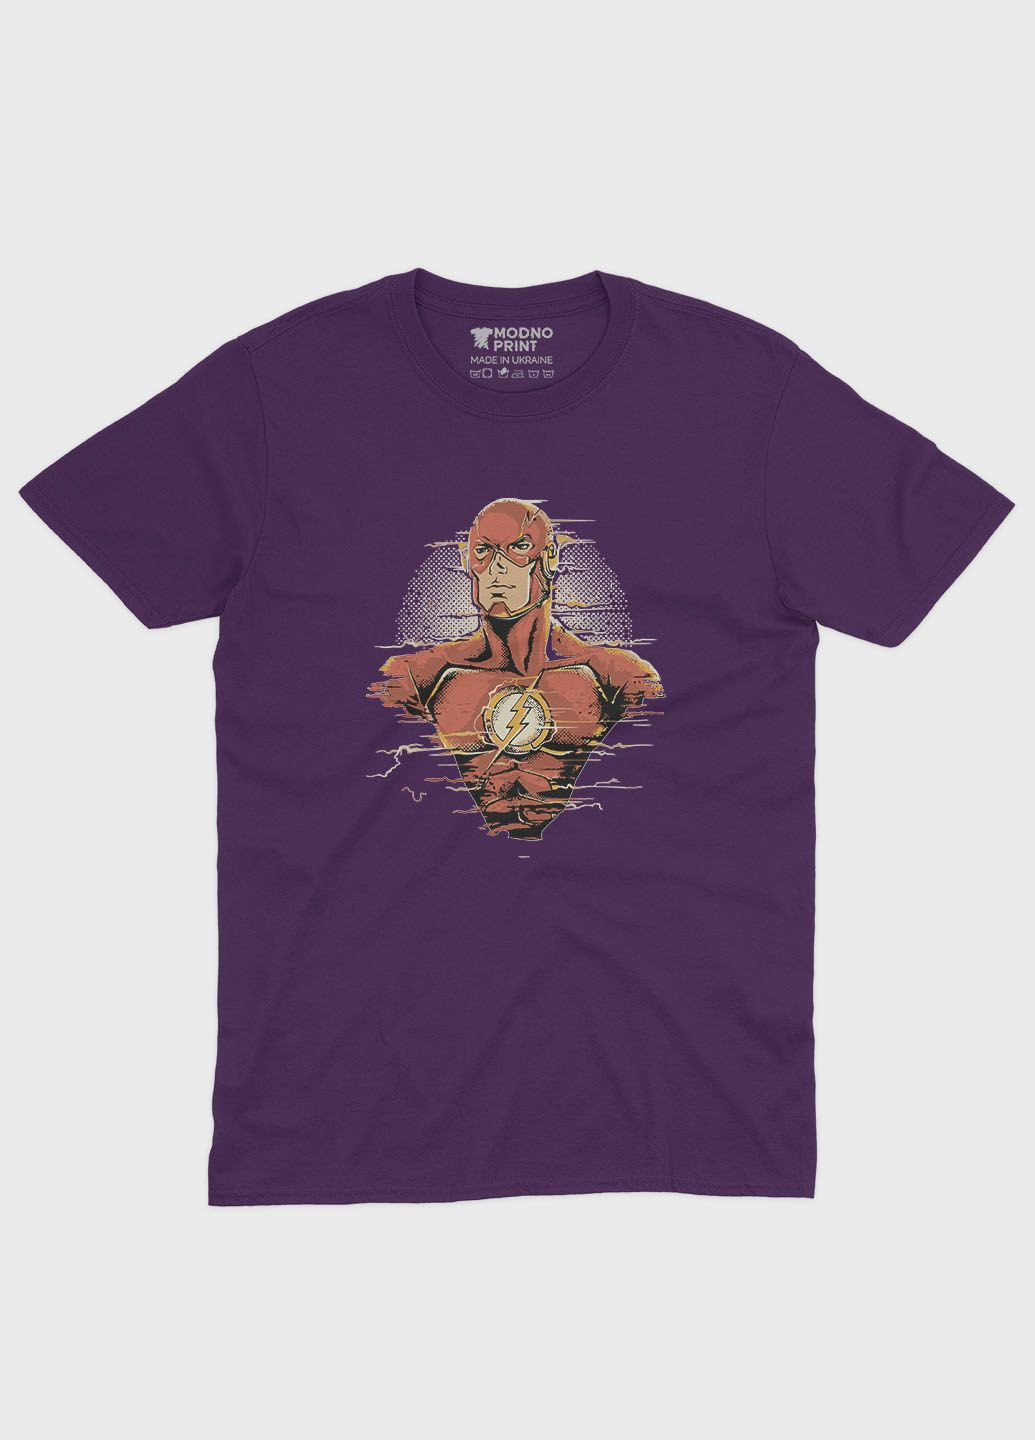 Фіолетова демісезонна футболка для дівчинки з принтом супергероя - флеш (ts001-1-dby-006-010-008-g) Modno